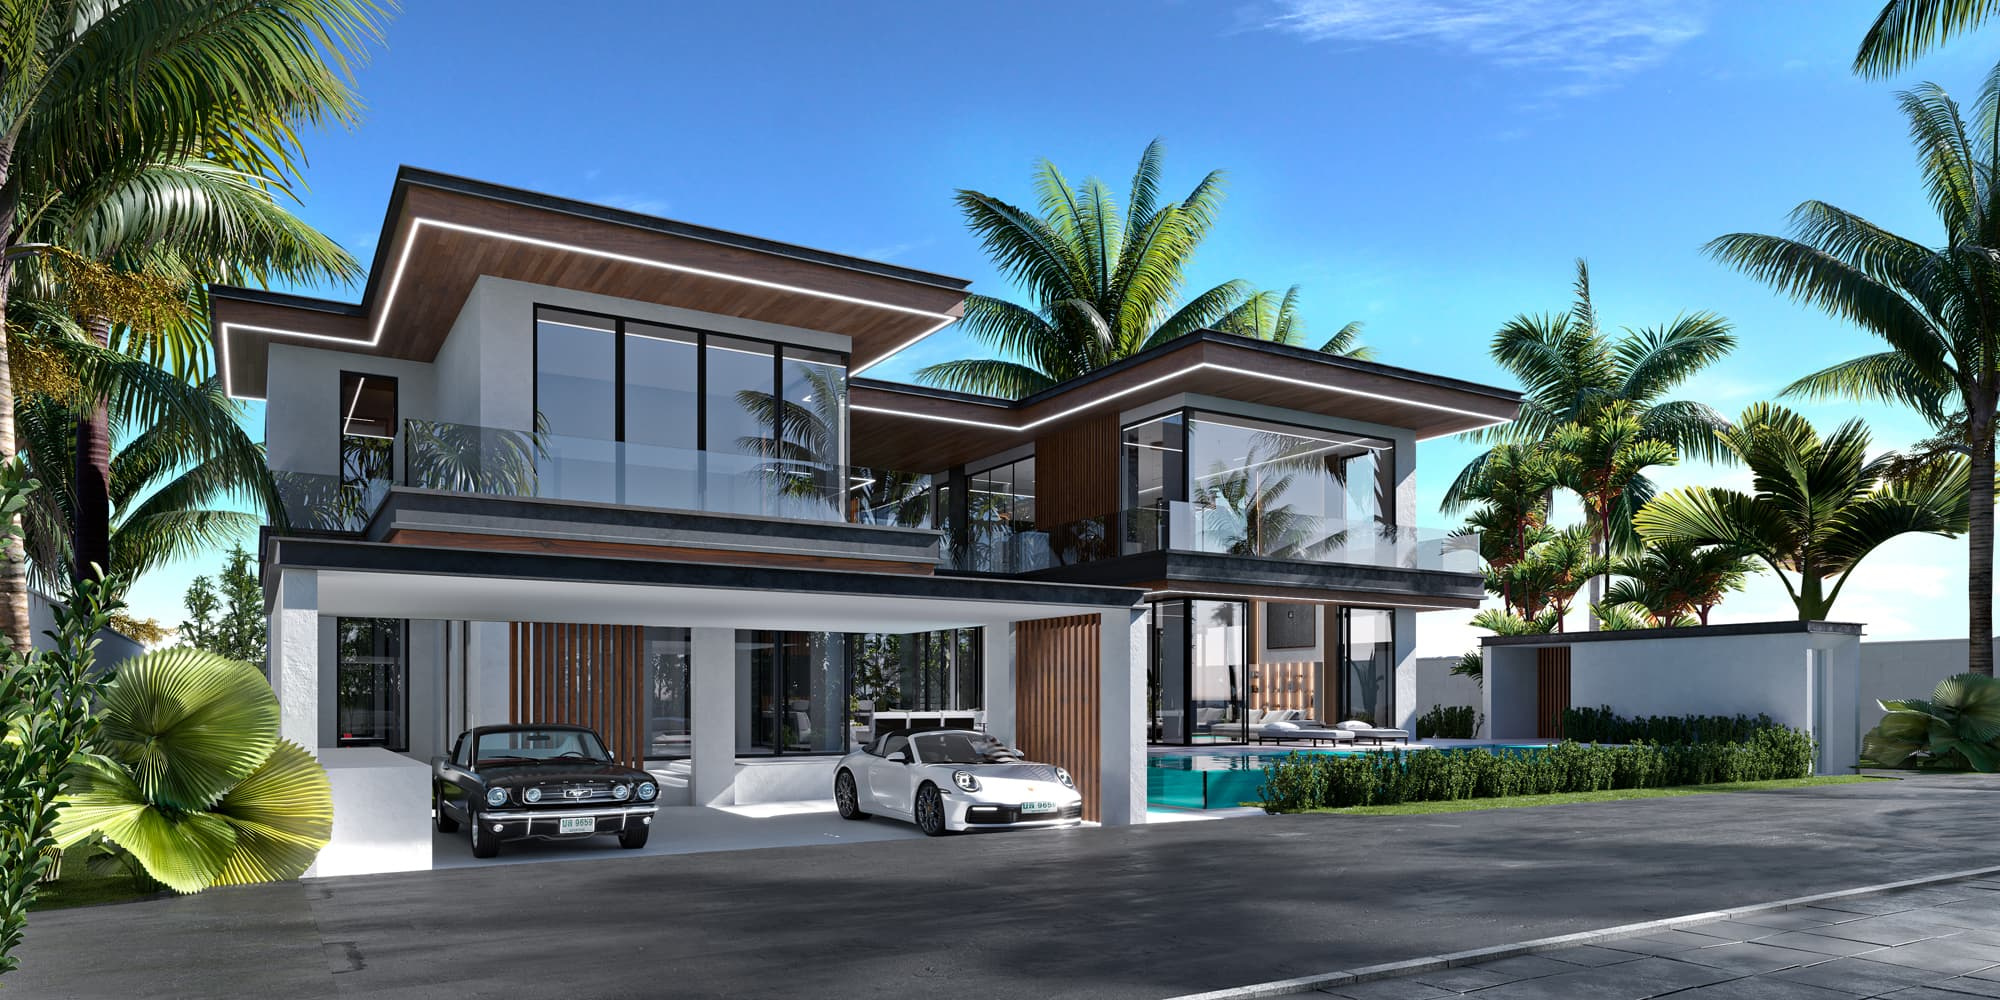 Итер Дизайн - Absolute Villa II - Architecture